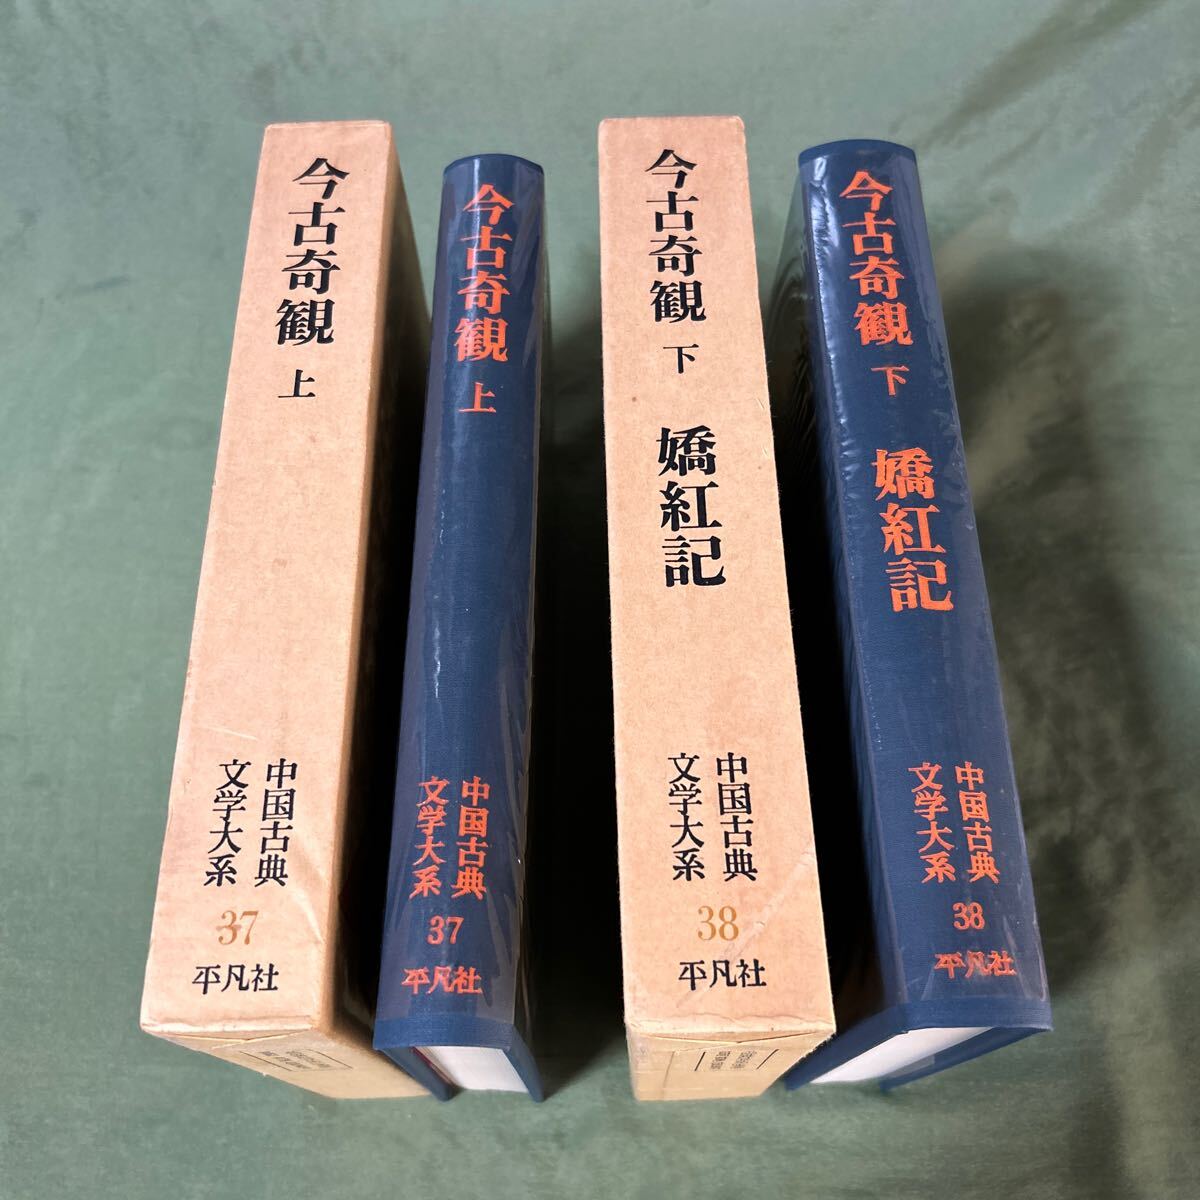 [YOS] China классическая литература большой серия Heibonsha 37 шт 38 шт сейчас старый .. верх и низ . кувшин . человек пешка рисовое поле доверие 2 . промежуток .... регистрация Song .. глициния . flat 